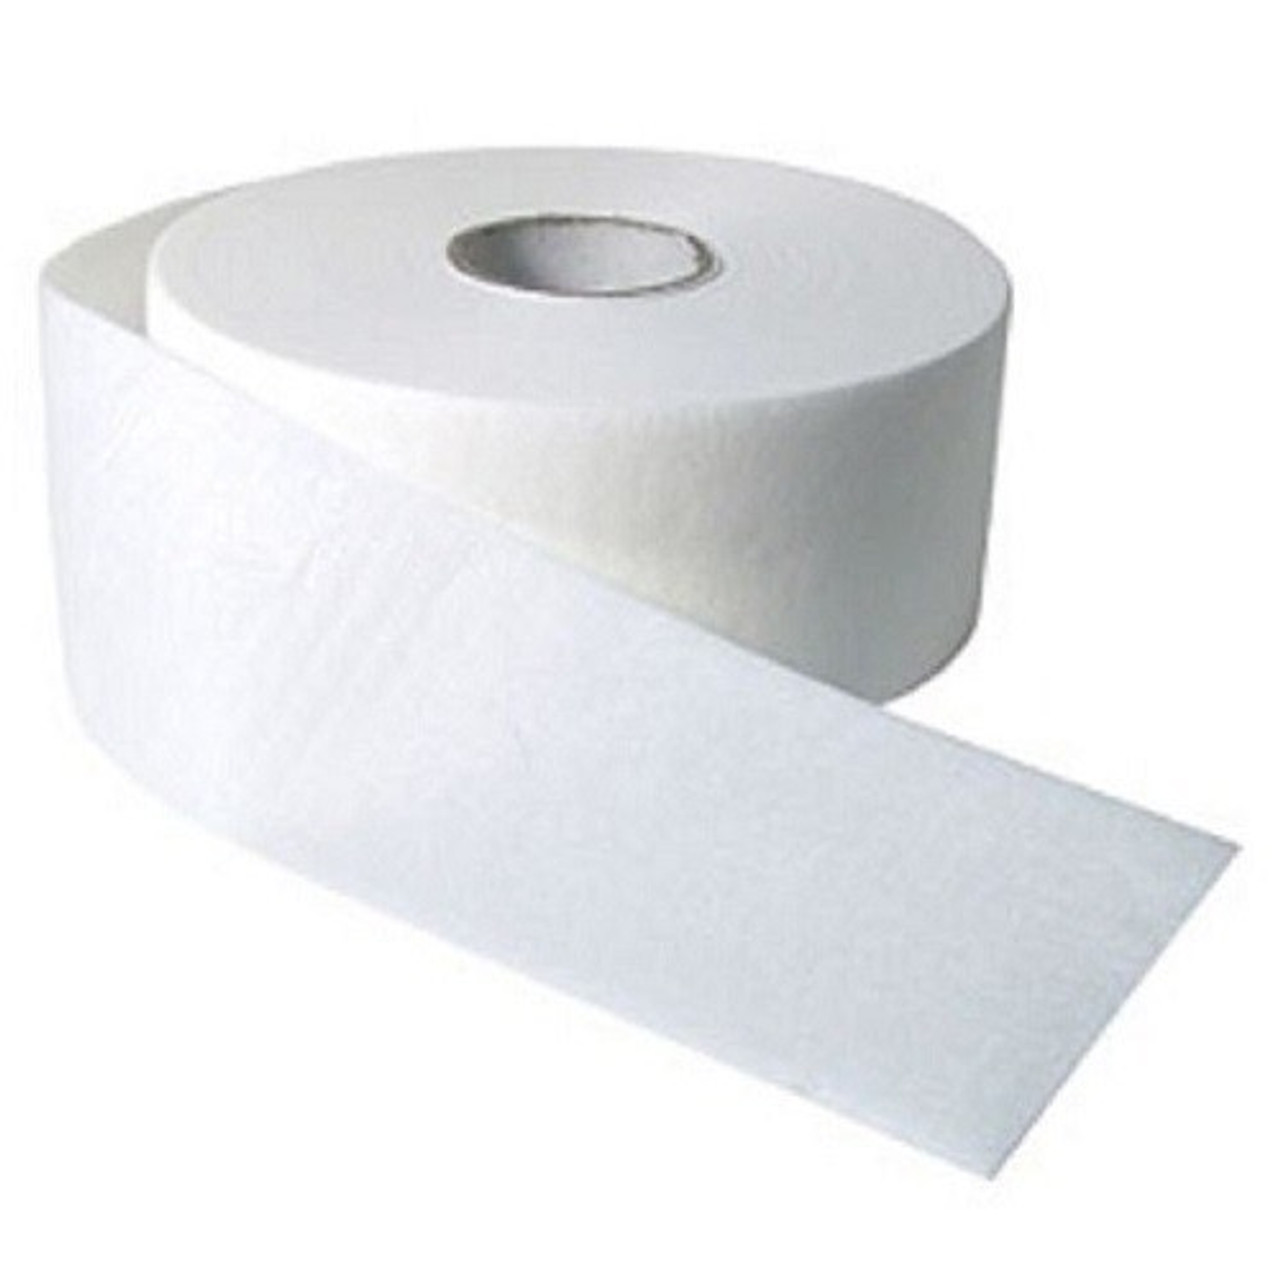 Wax Paper Roll